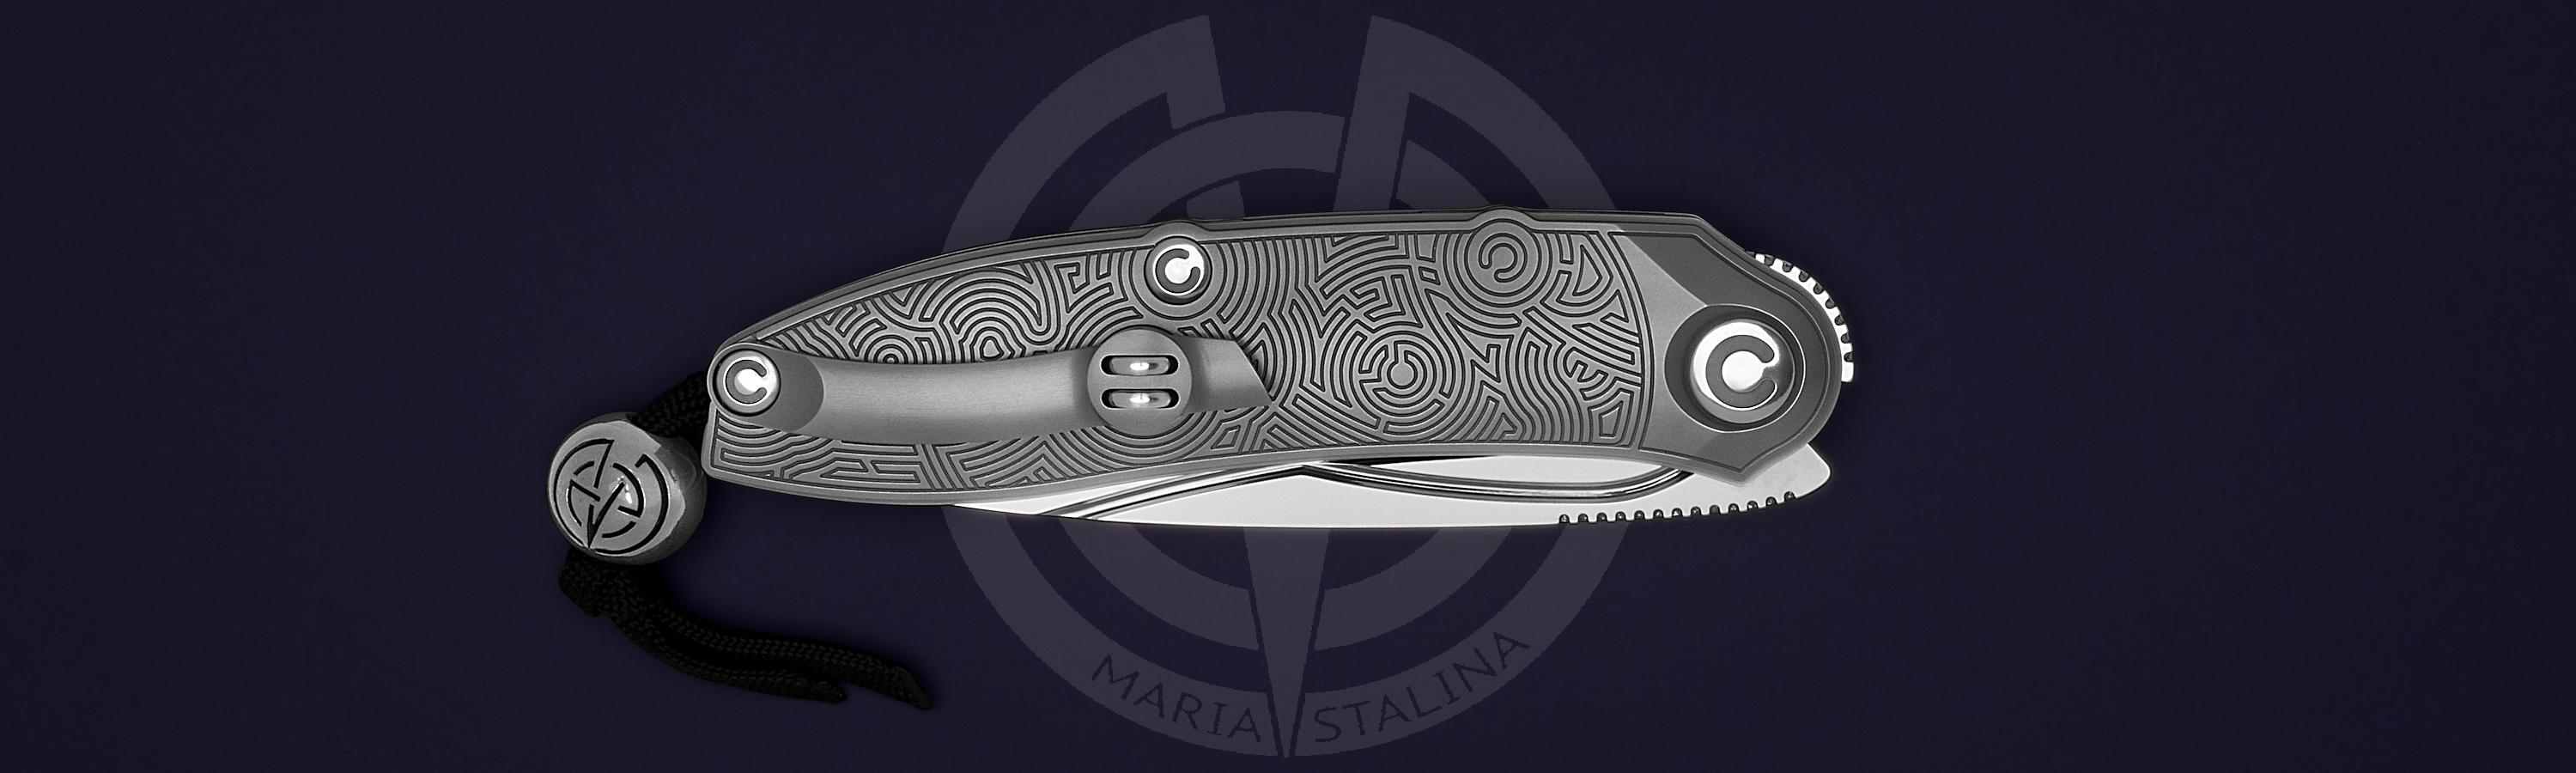 Engraved knife Technoshaman BA Run1 8/10